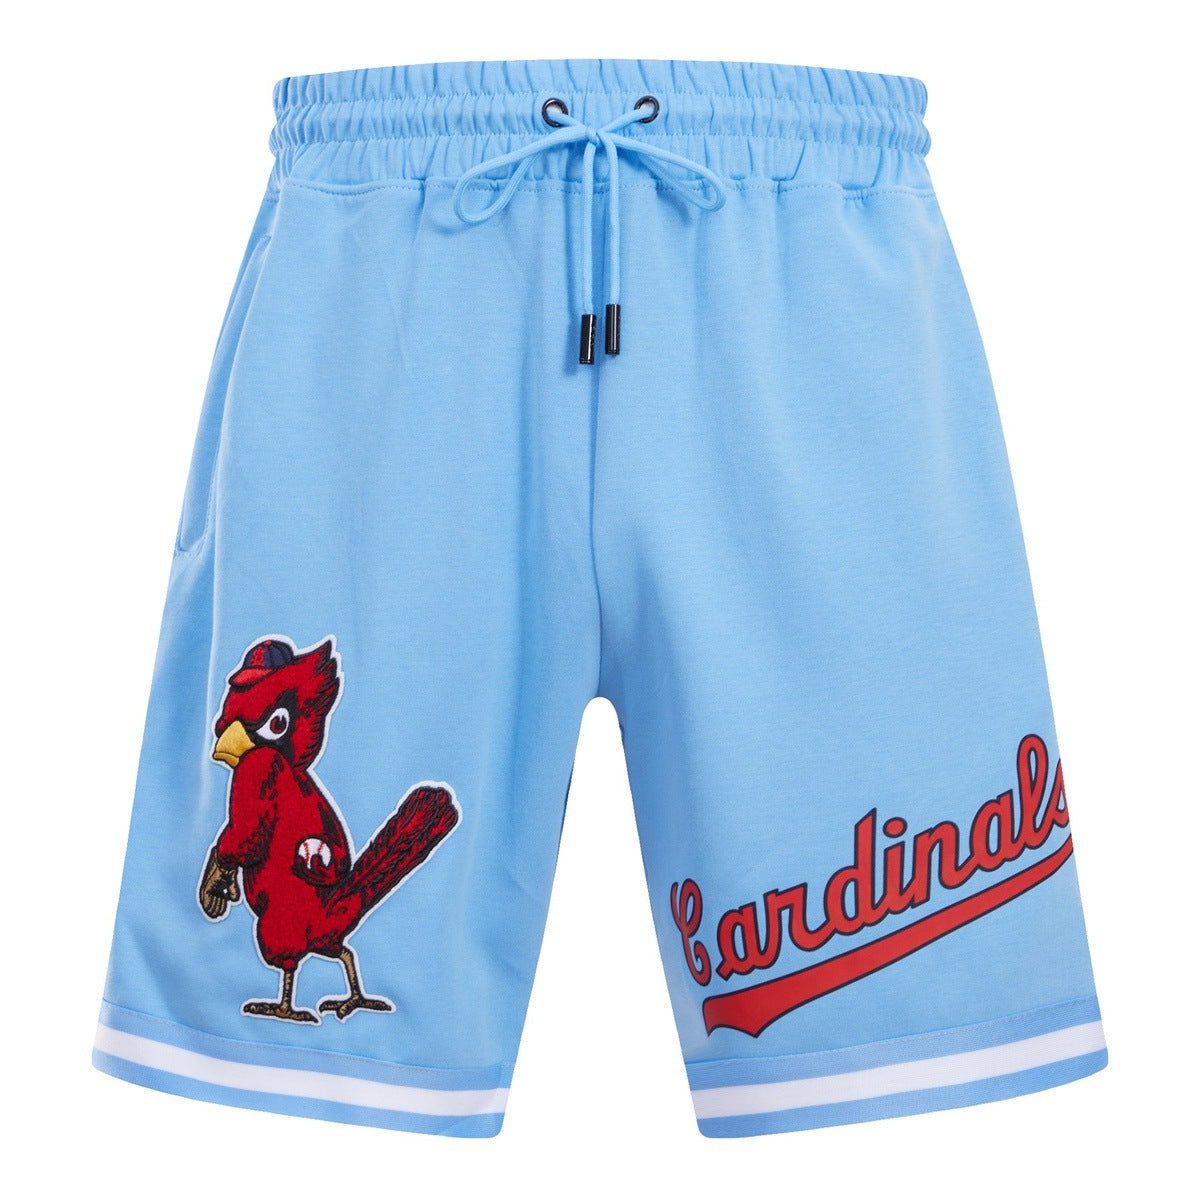 Men's Pro Standard Light Blue St. Louis Cardinals Team Logo T-Shirt Size: Medium